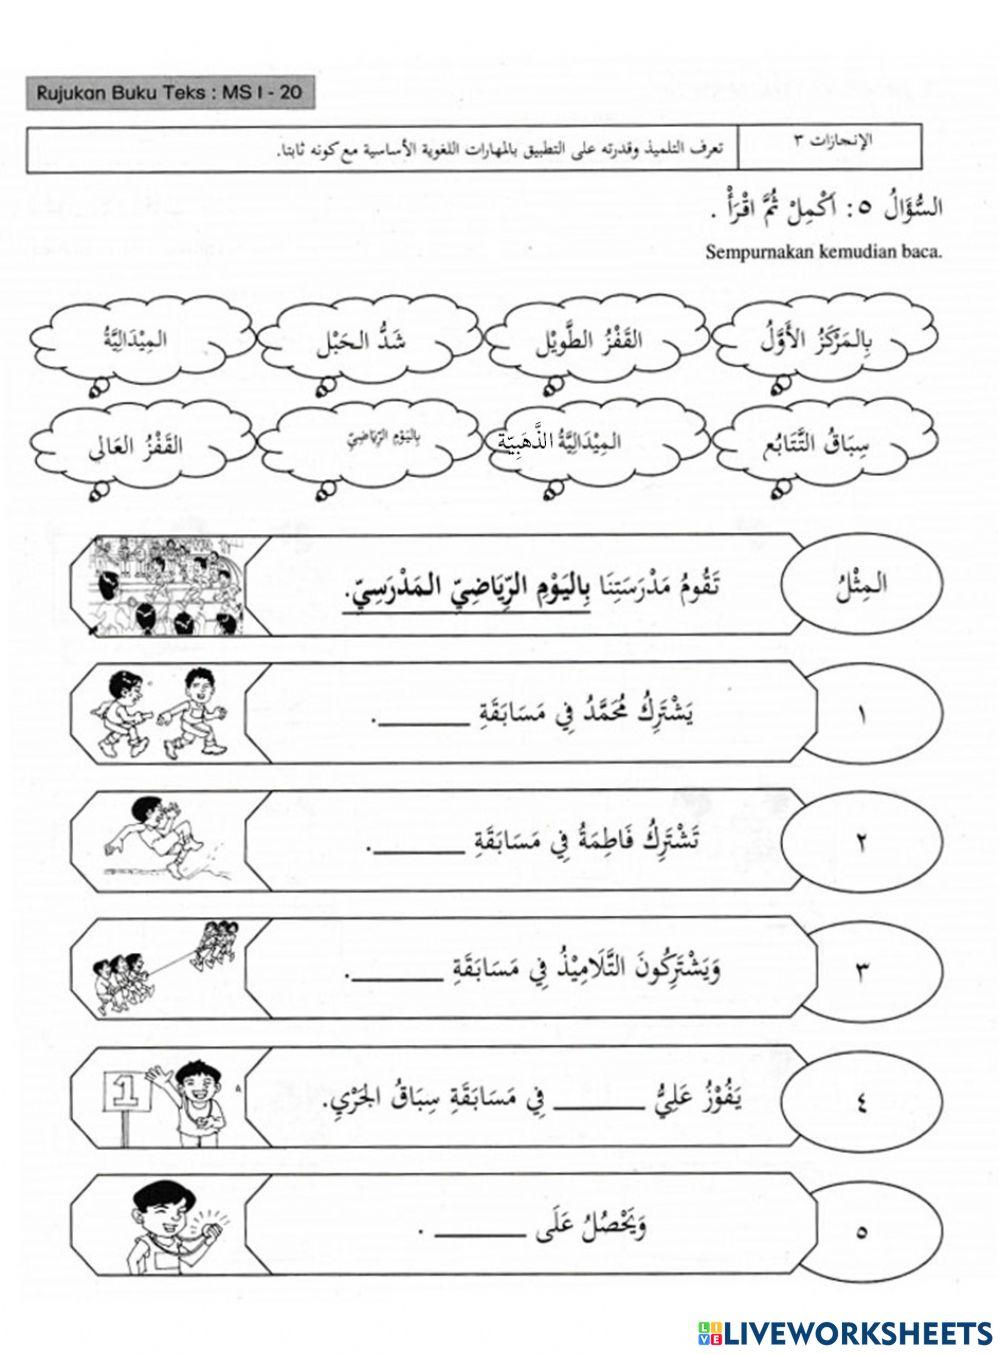 Latihan Bahasa Arab Tahun 6 اليوم الرياضي المدرسي Hari Sukan Sekolah